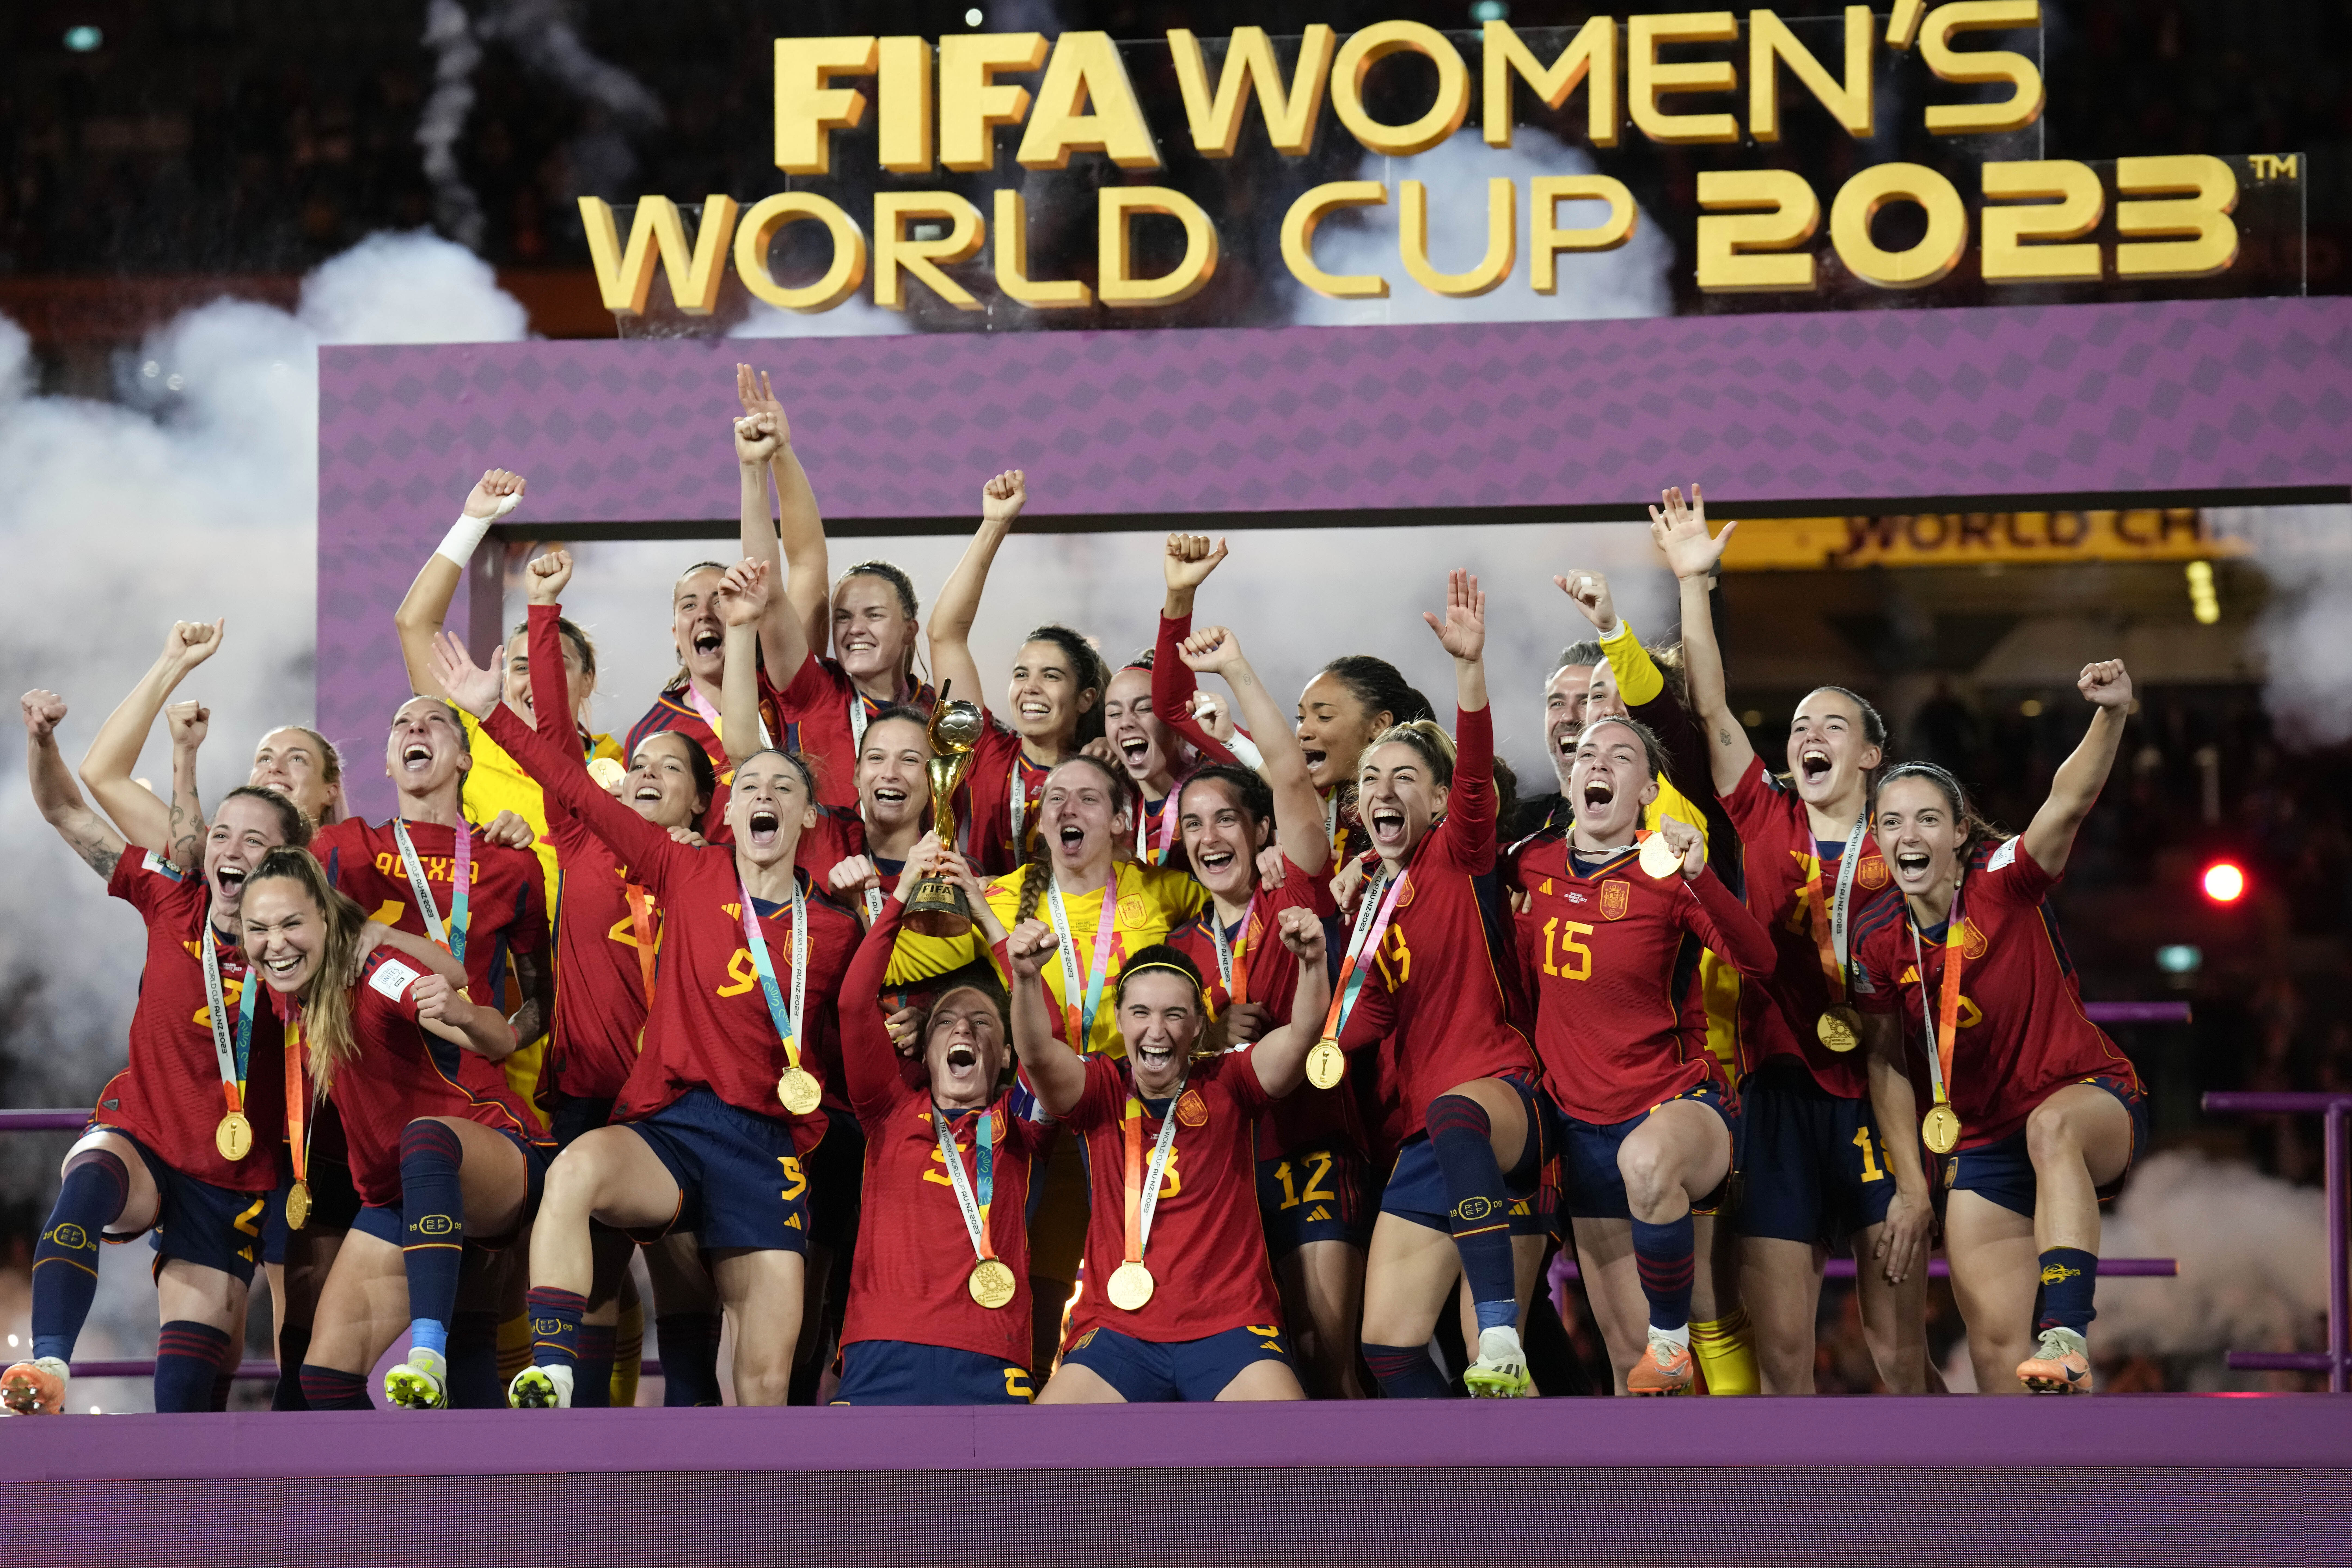 La Roja sit at the summit of women's football